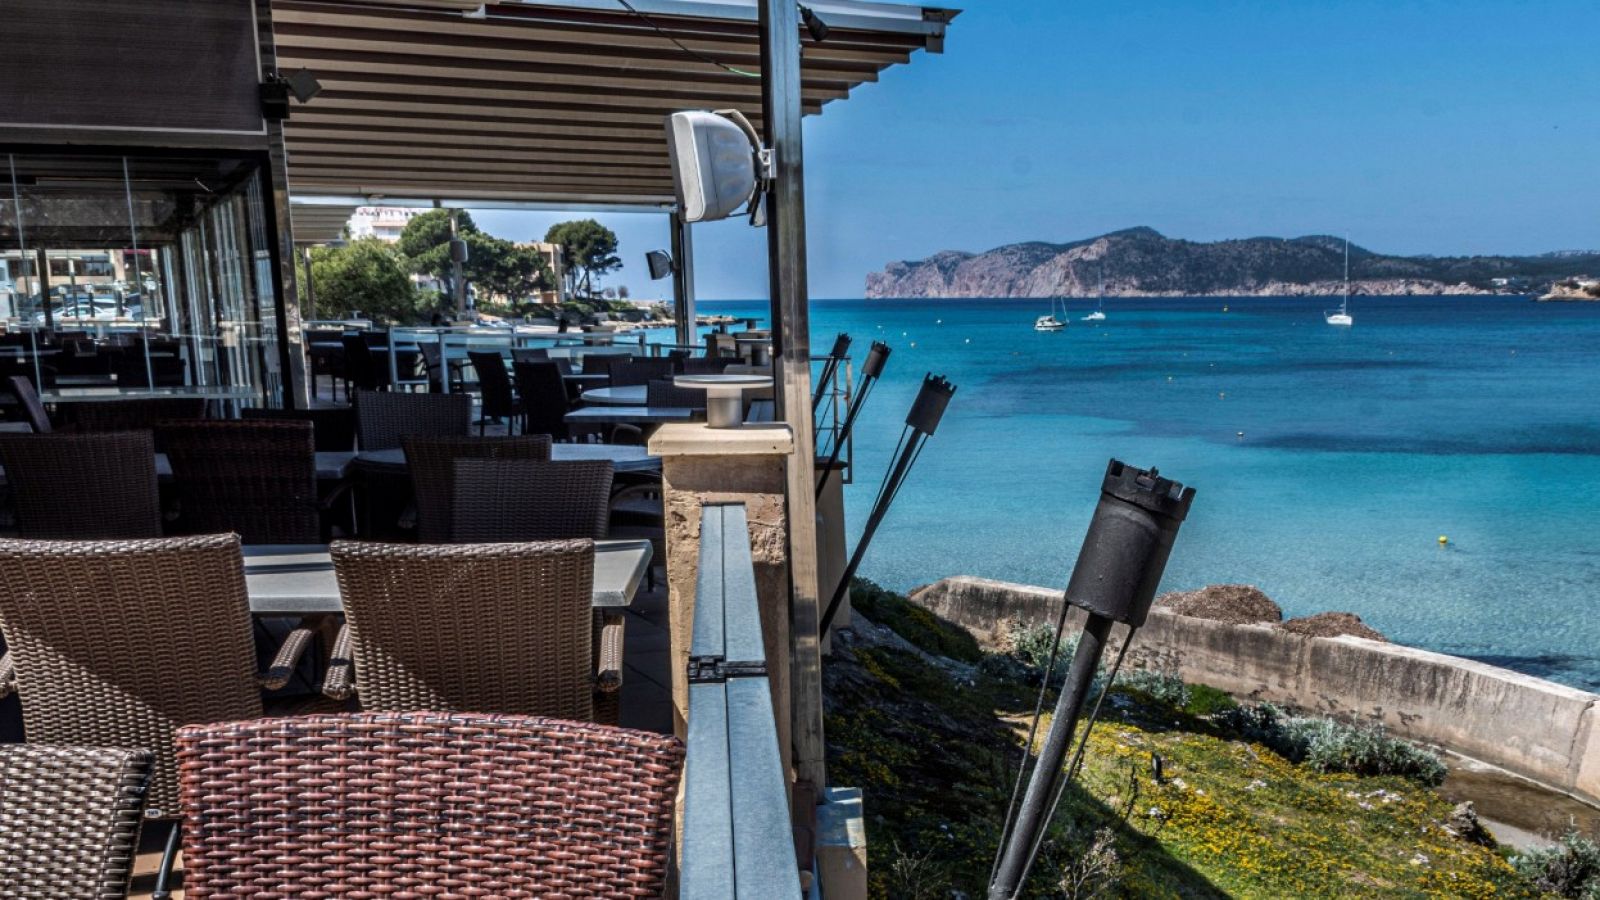 Terraza de un restaurante cerrado con vistas a una playa de Baleares.